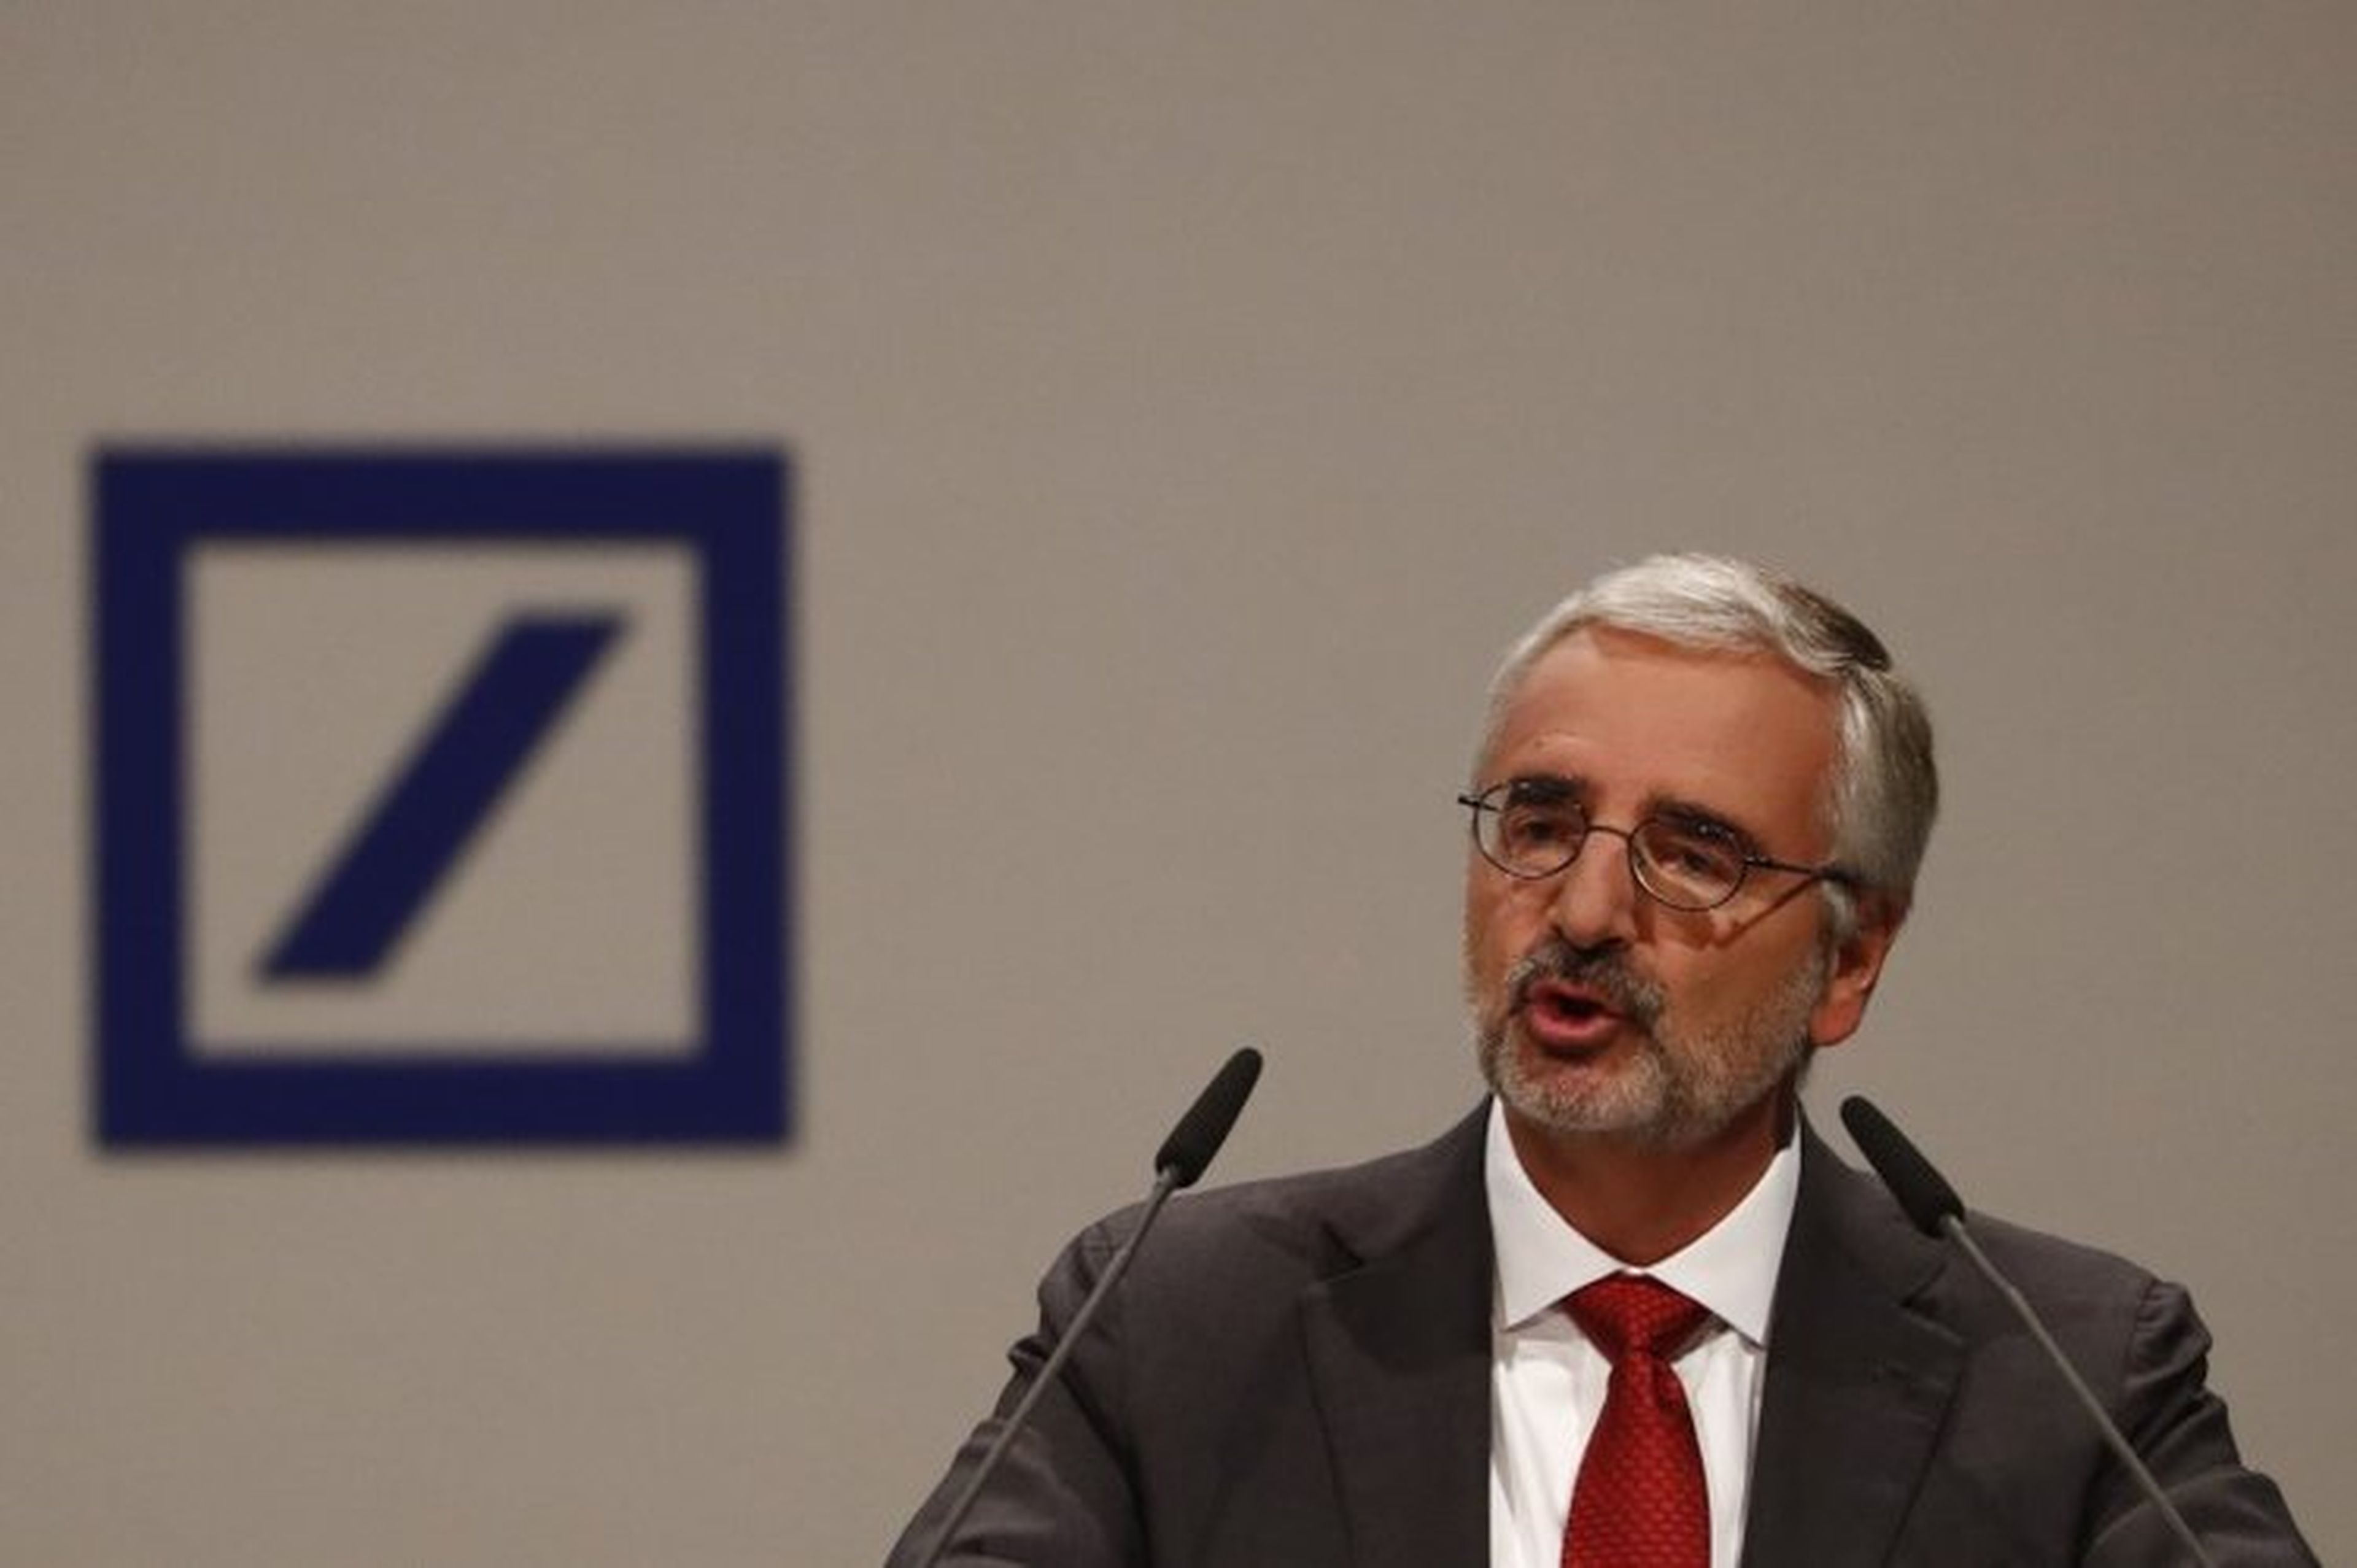 El presidente de la Junta de Supervisión de Deutsche Bank Paul Achleitner